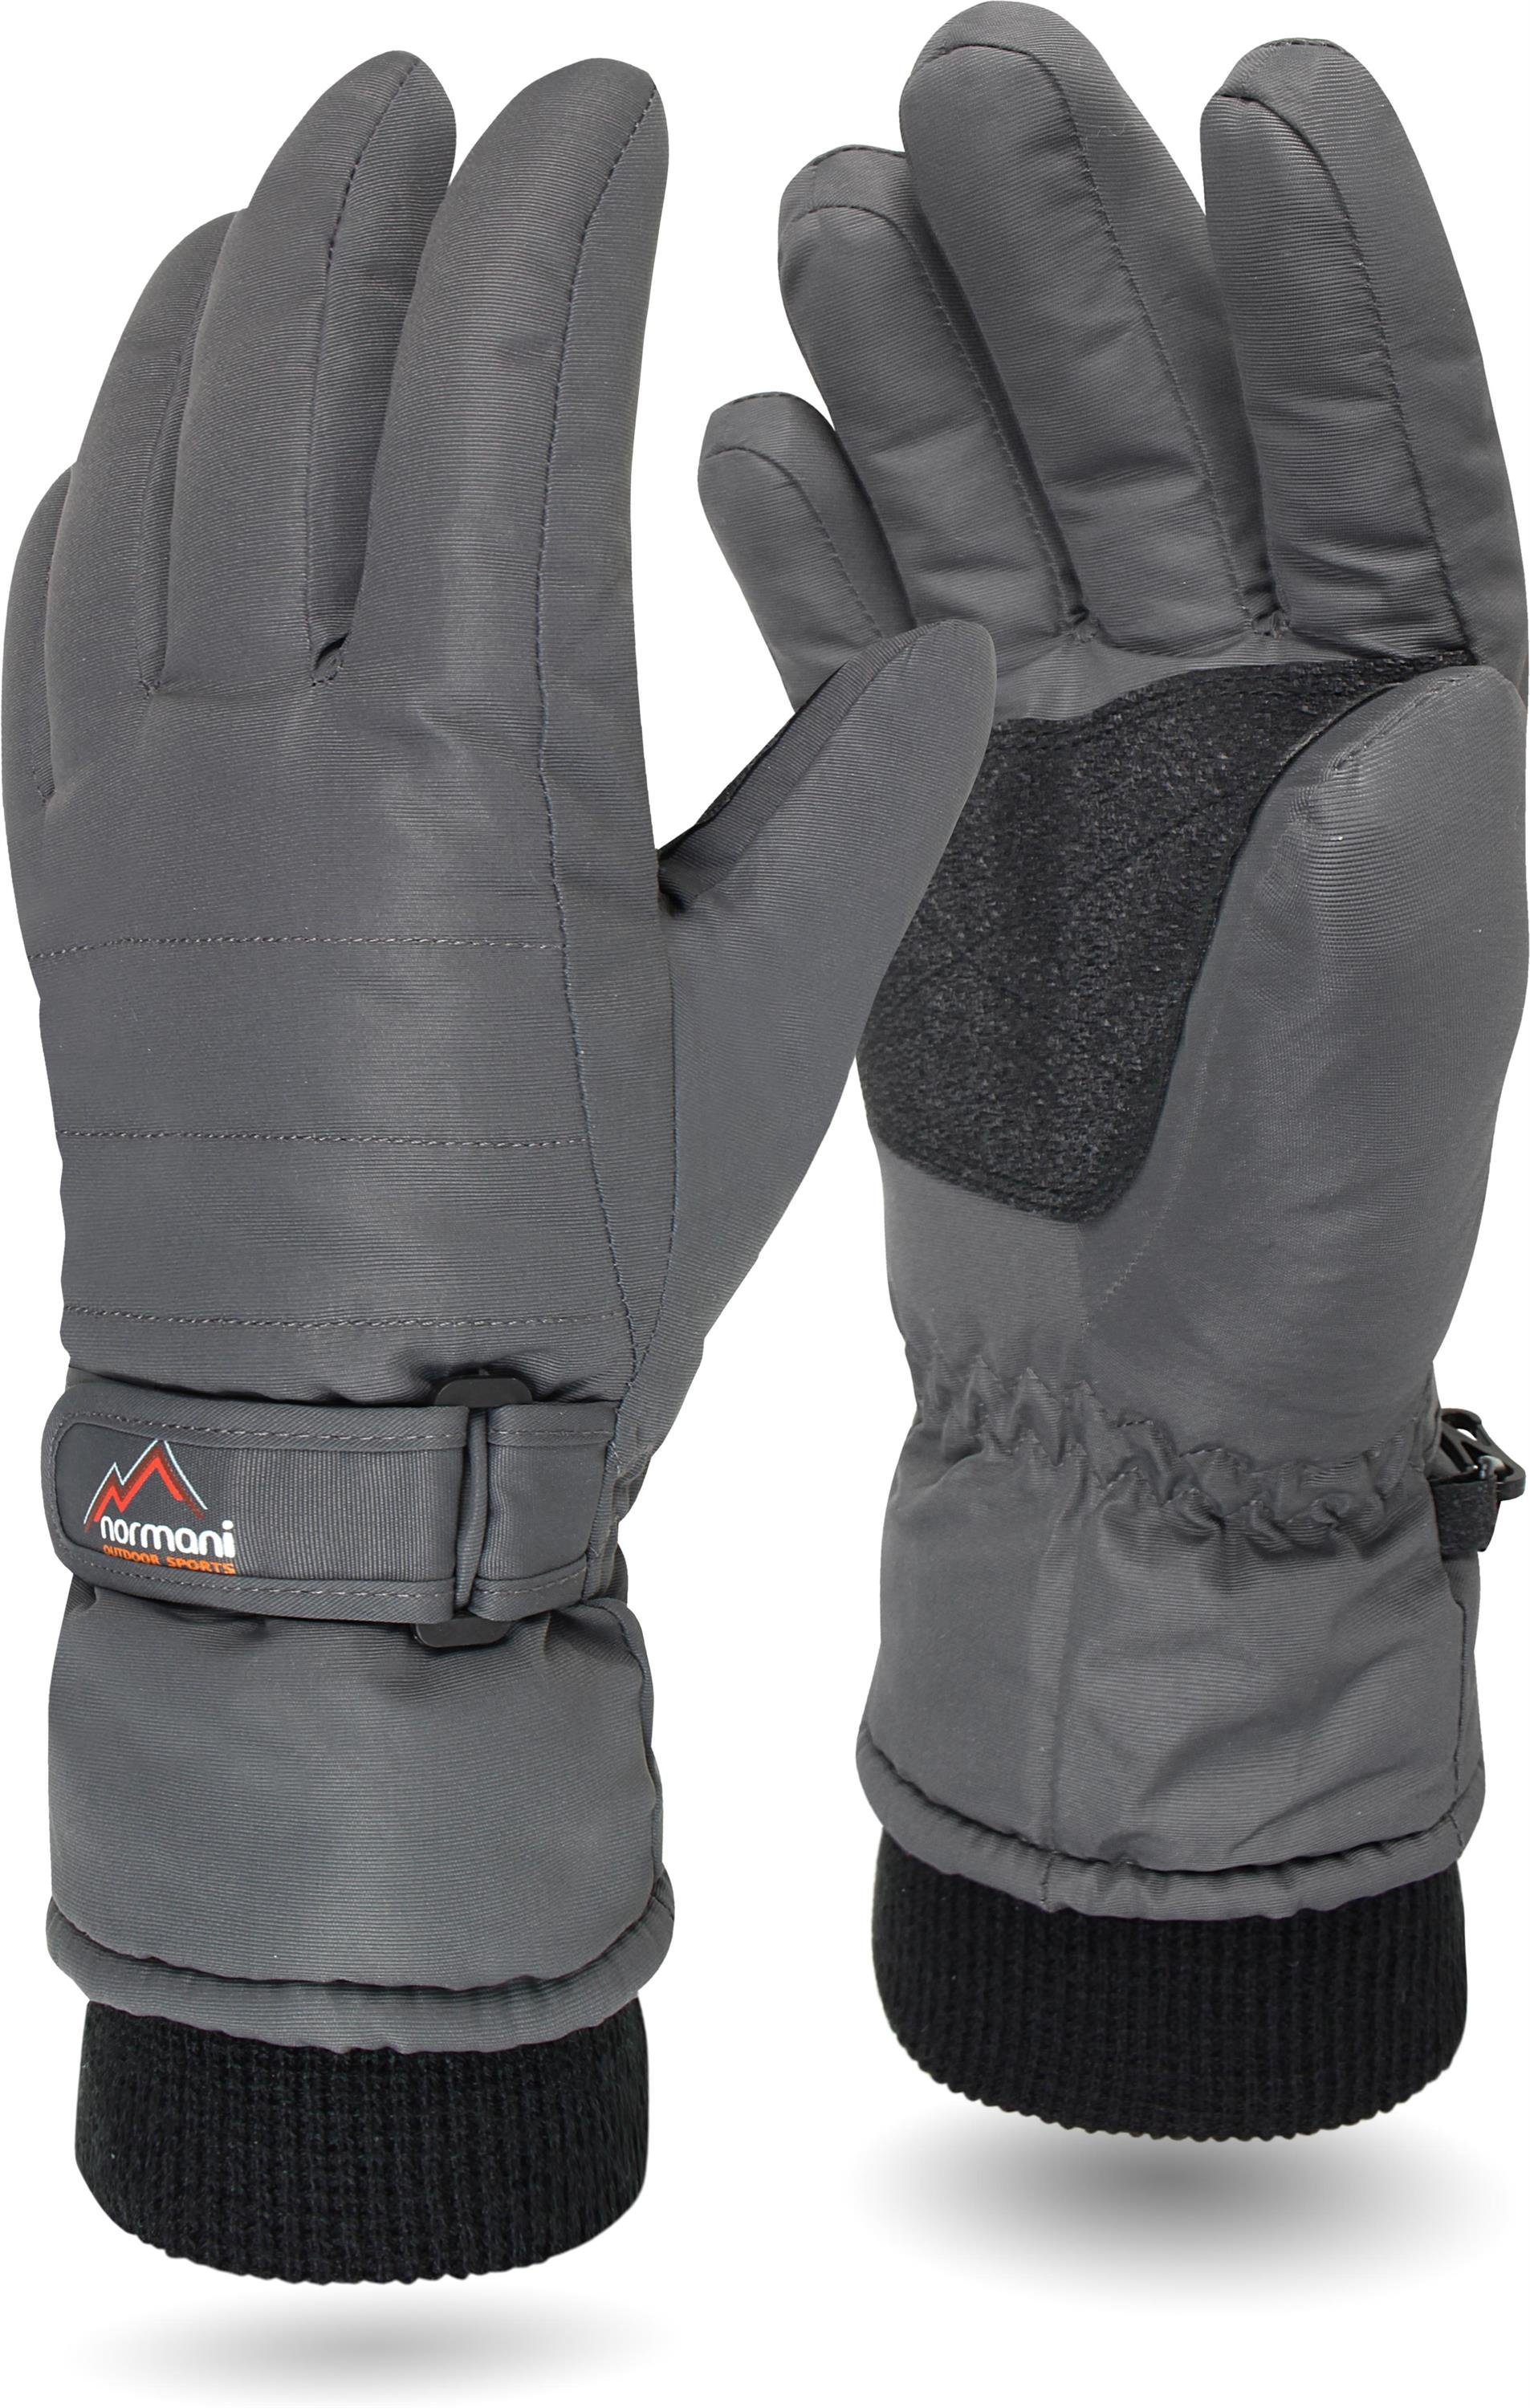 normani 3M Thinsulate Winterhandschuhe Extrem Warme und wasserdichte Unisex Skihandschuhe Farbe Schwarz/Schwarz Größe L